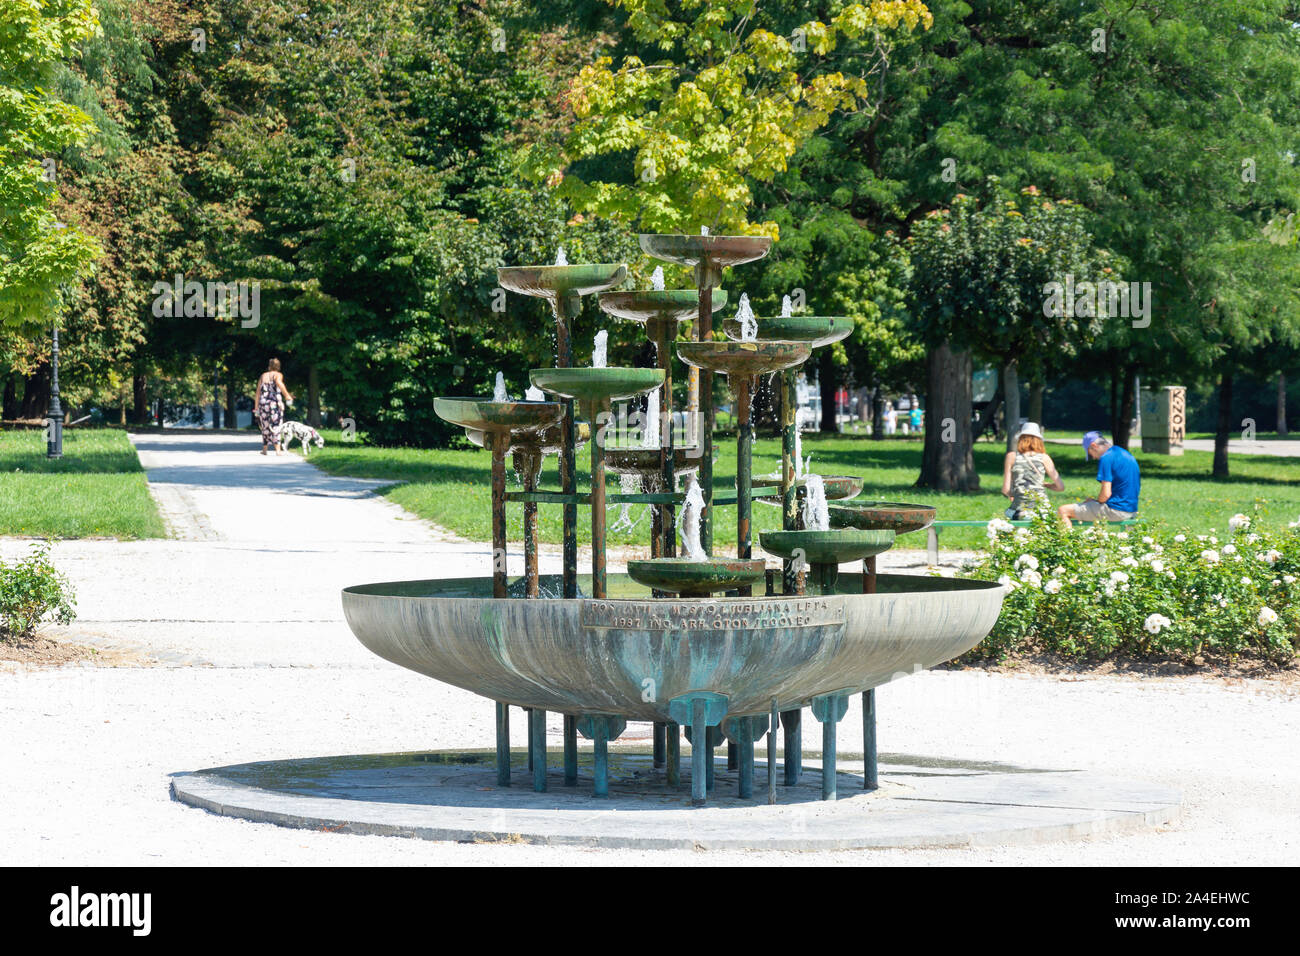 Gardens and fountain in City Park Tivoli, Ljubljana, Slovenia Stock Photo